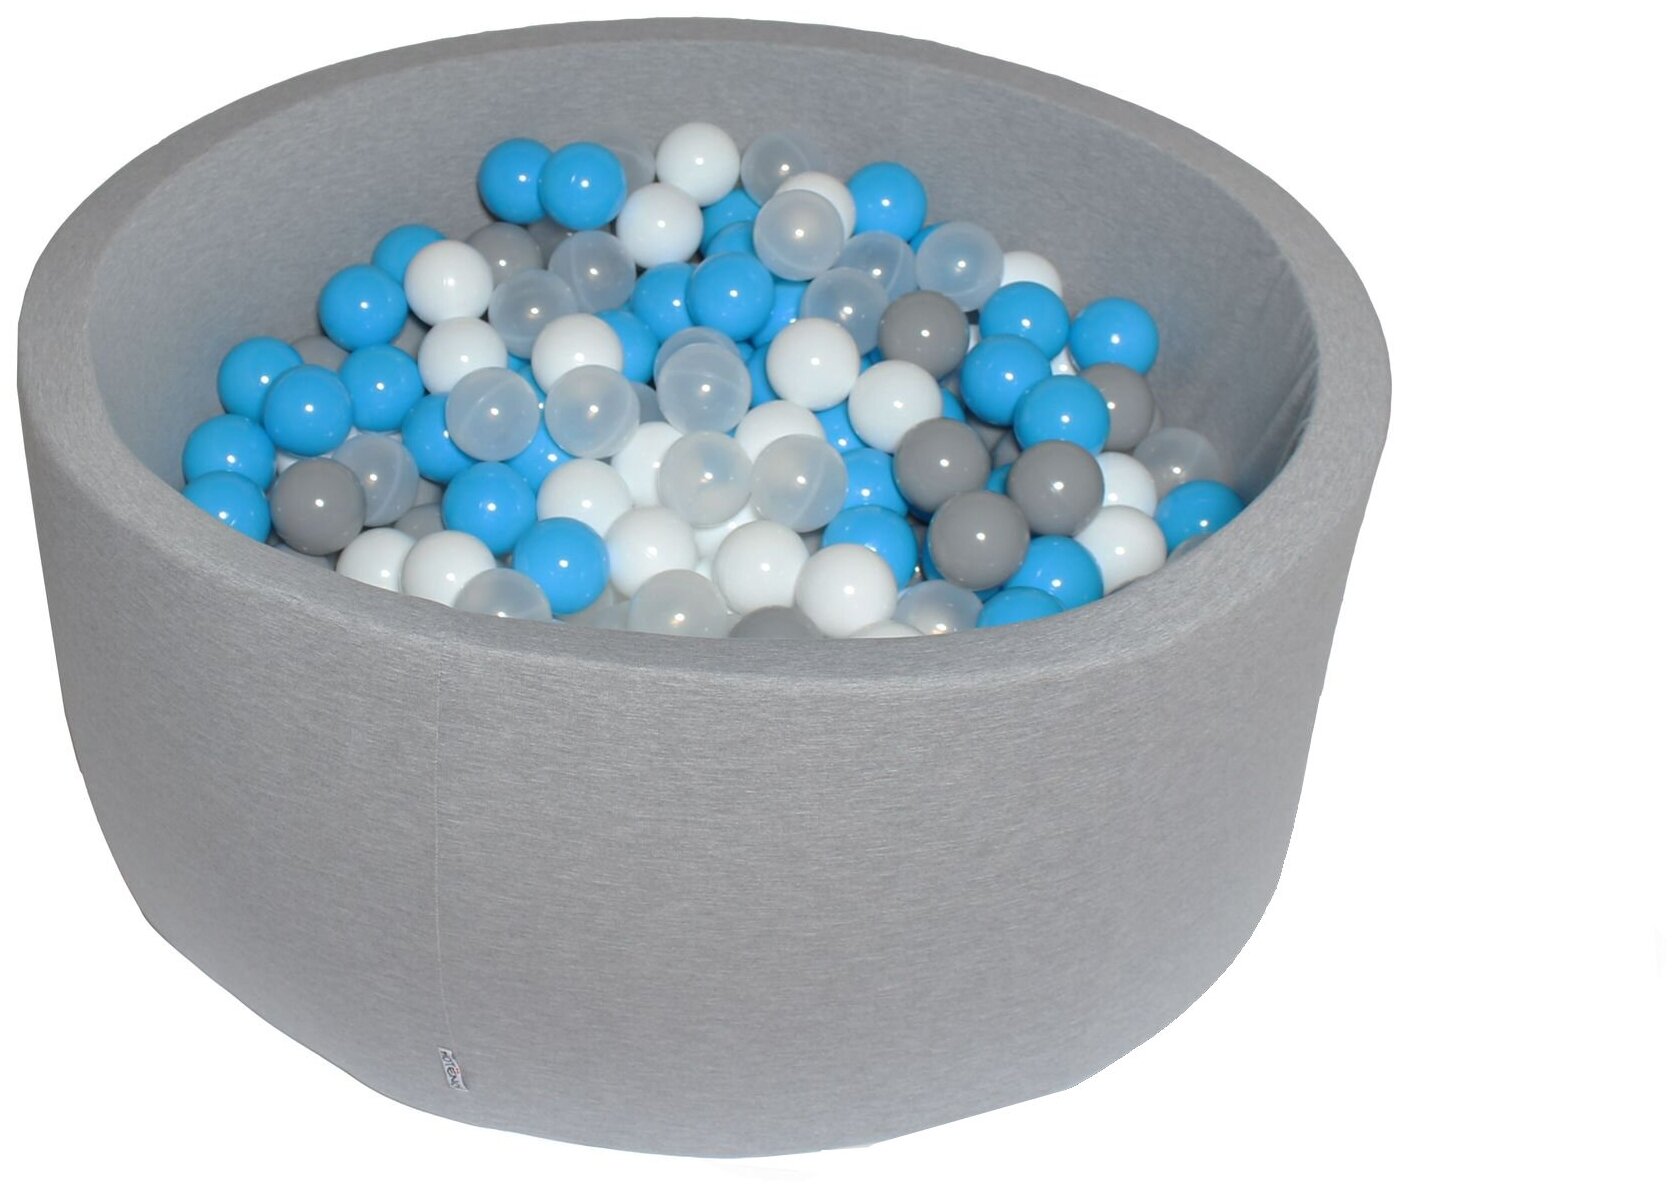 Сухой игровой бассейн “Небеса” серый выс. 40см с 200 шариками: серый, белый, прозрачный, голубой